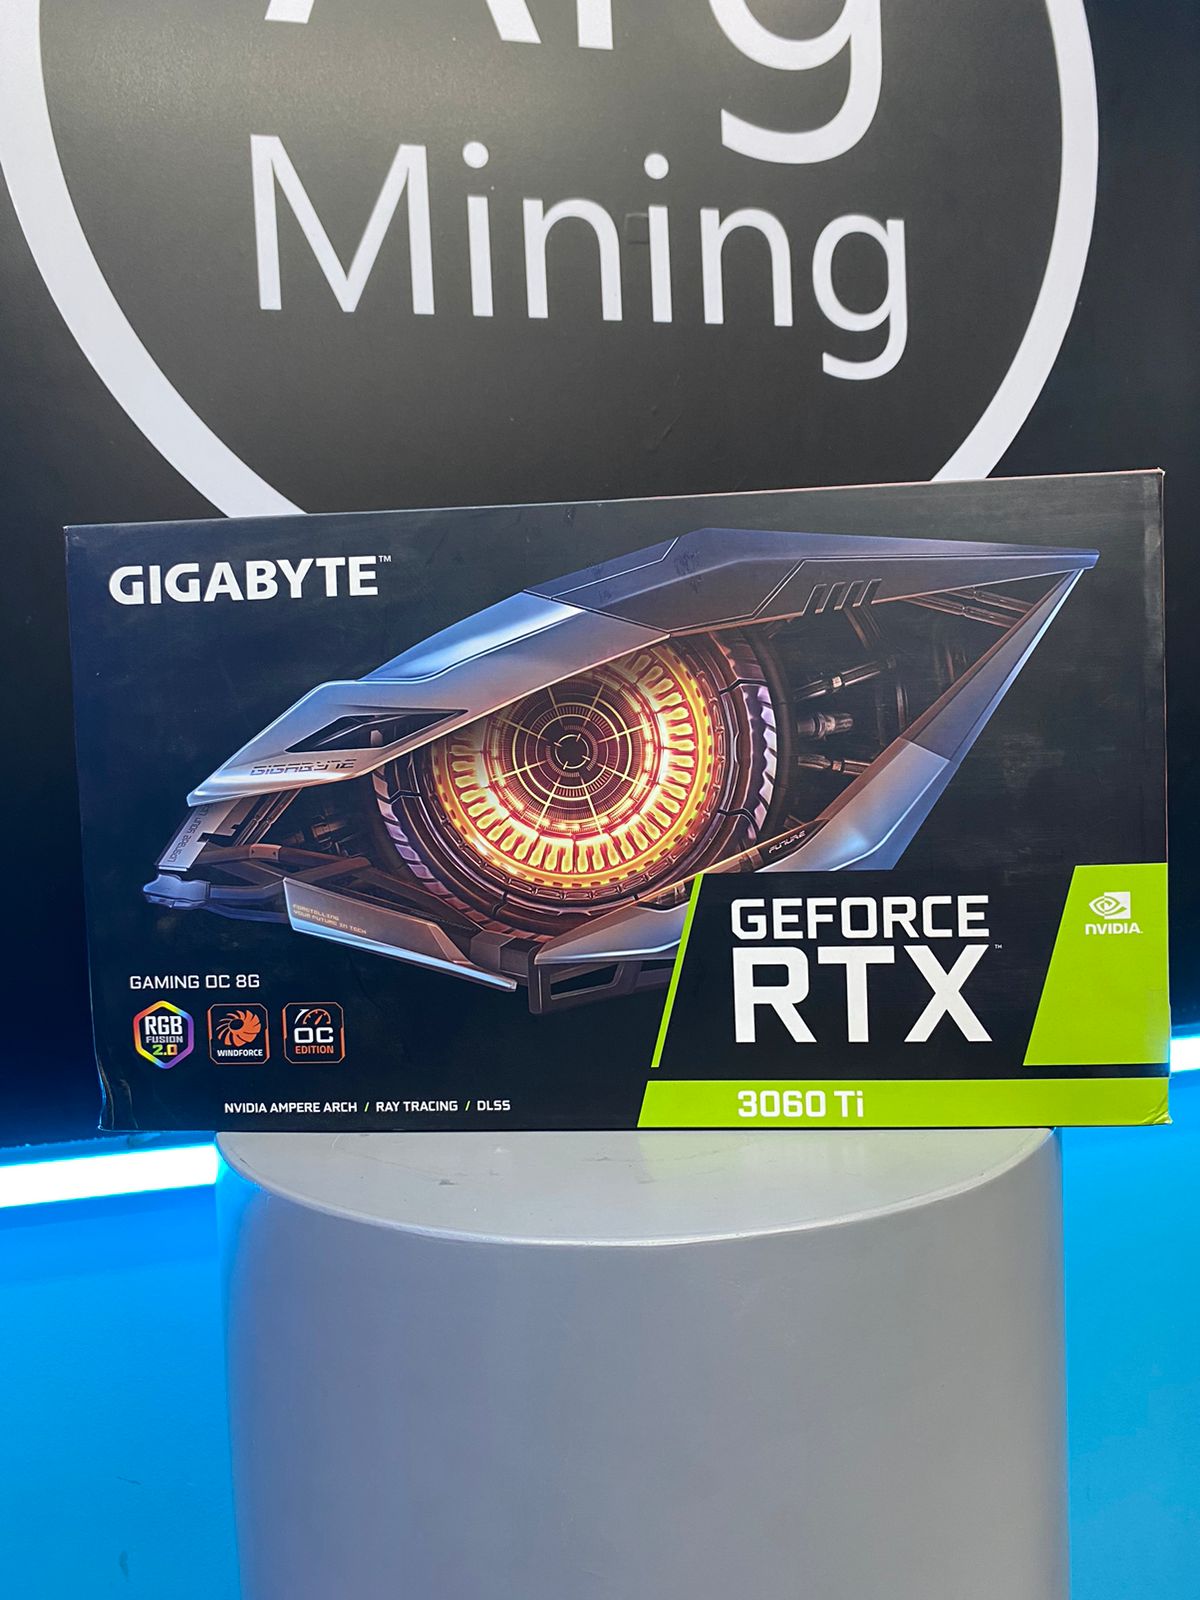 GIGABYTE NVIDIA GEFORCE RTX 3060TI 8GB - Premium Placas de Video de Gigabyte - Solo $663705! Compra ahora Web3Arg